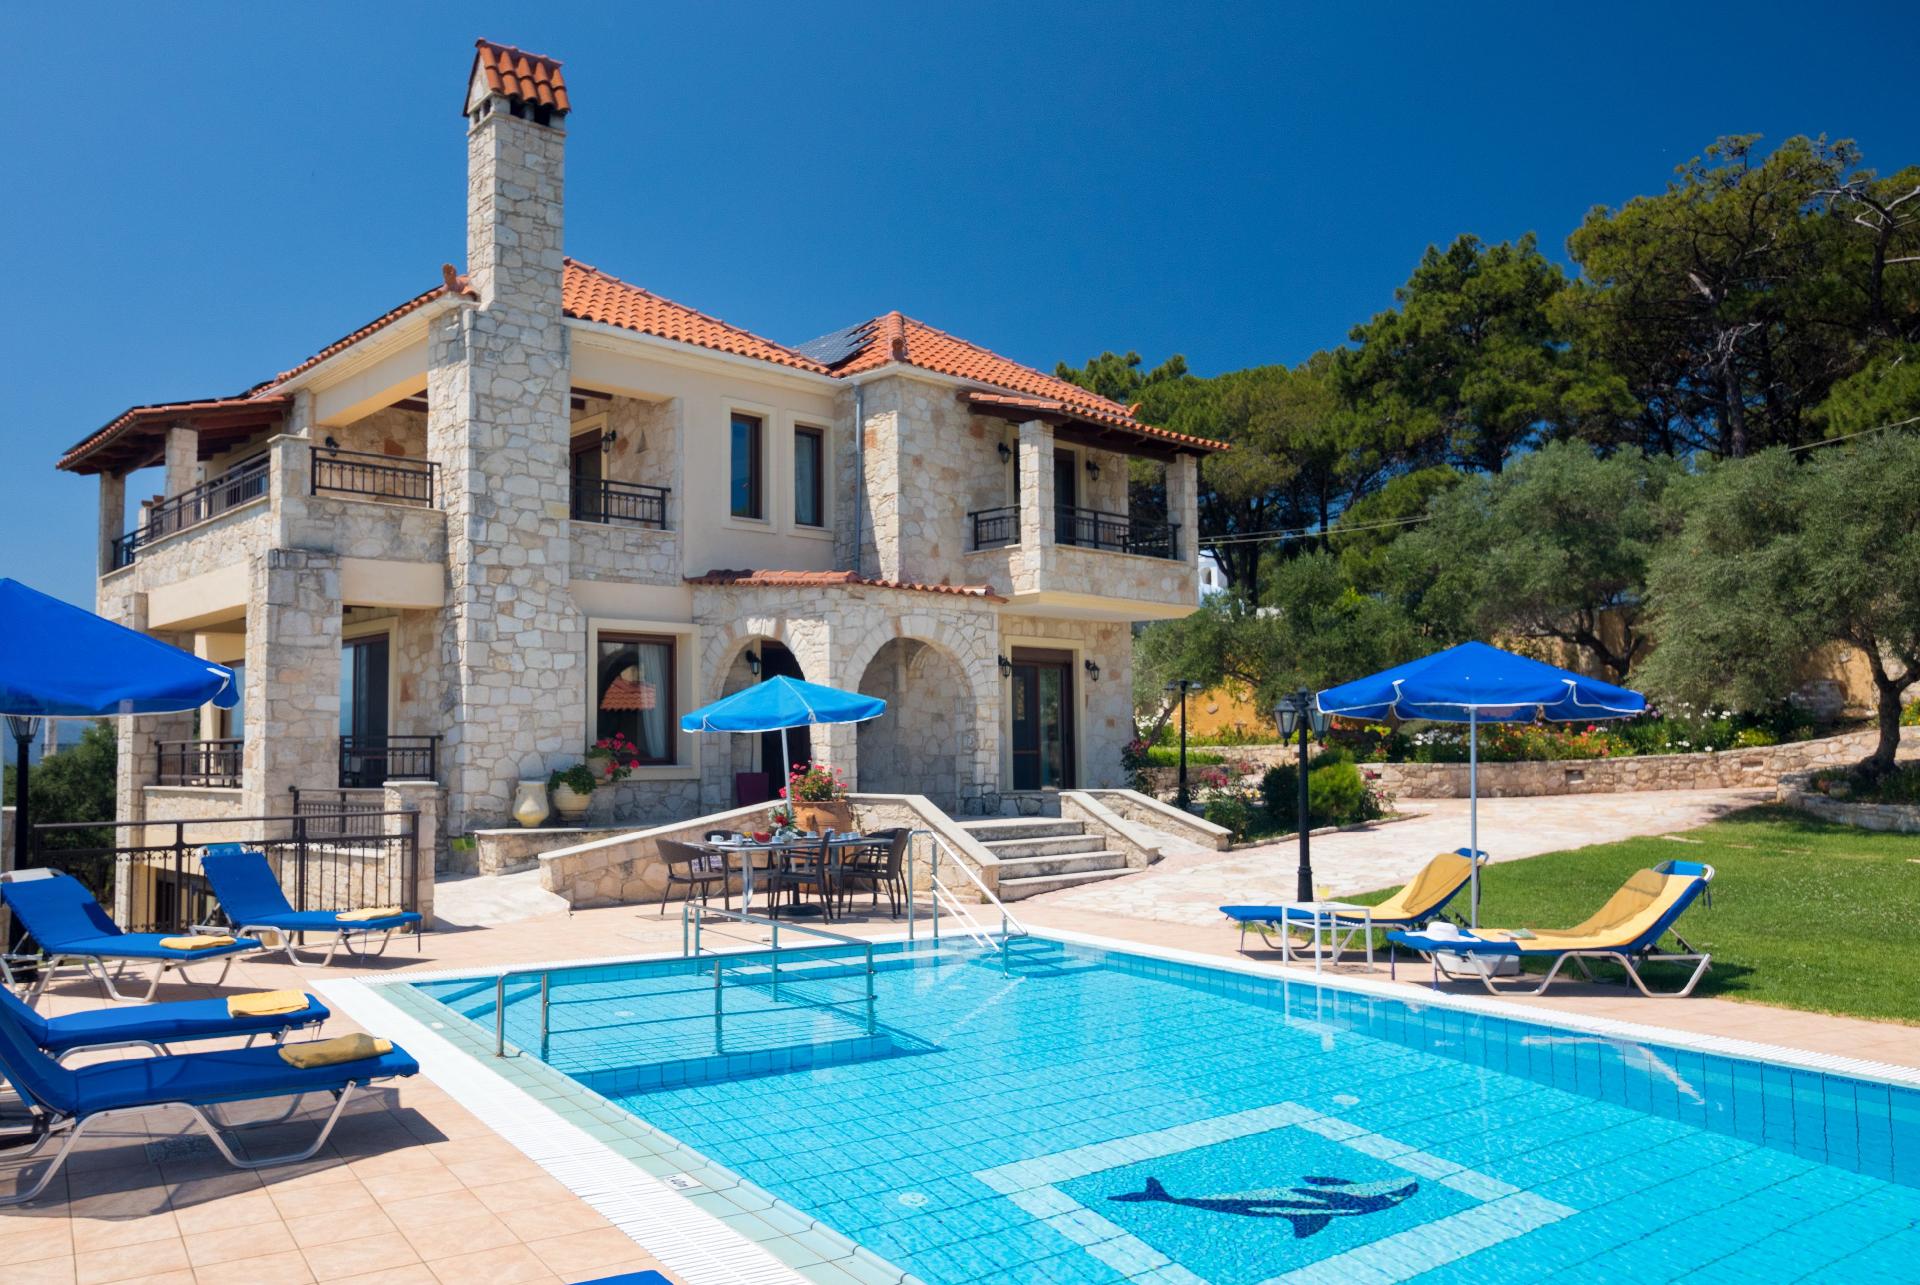 Ferienhaus mit Privatpool für 12 Personen ca. Ferienhaus in Griechenland